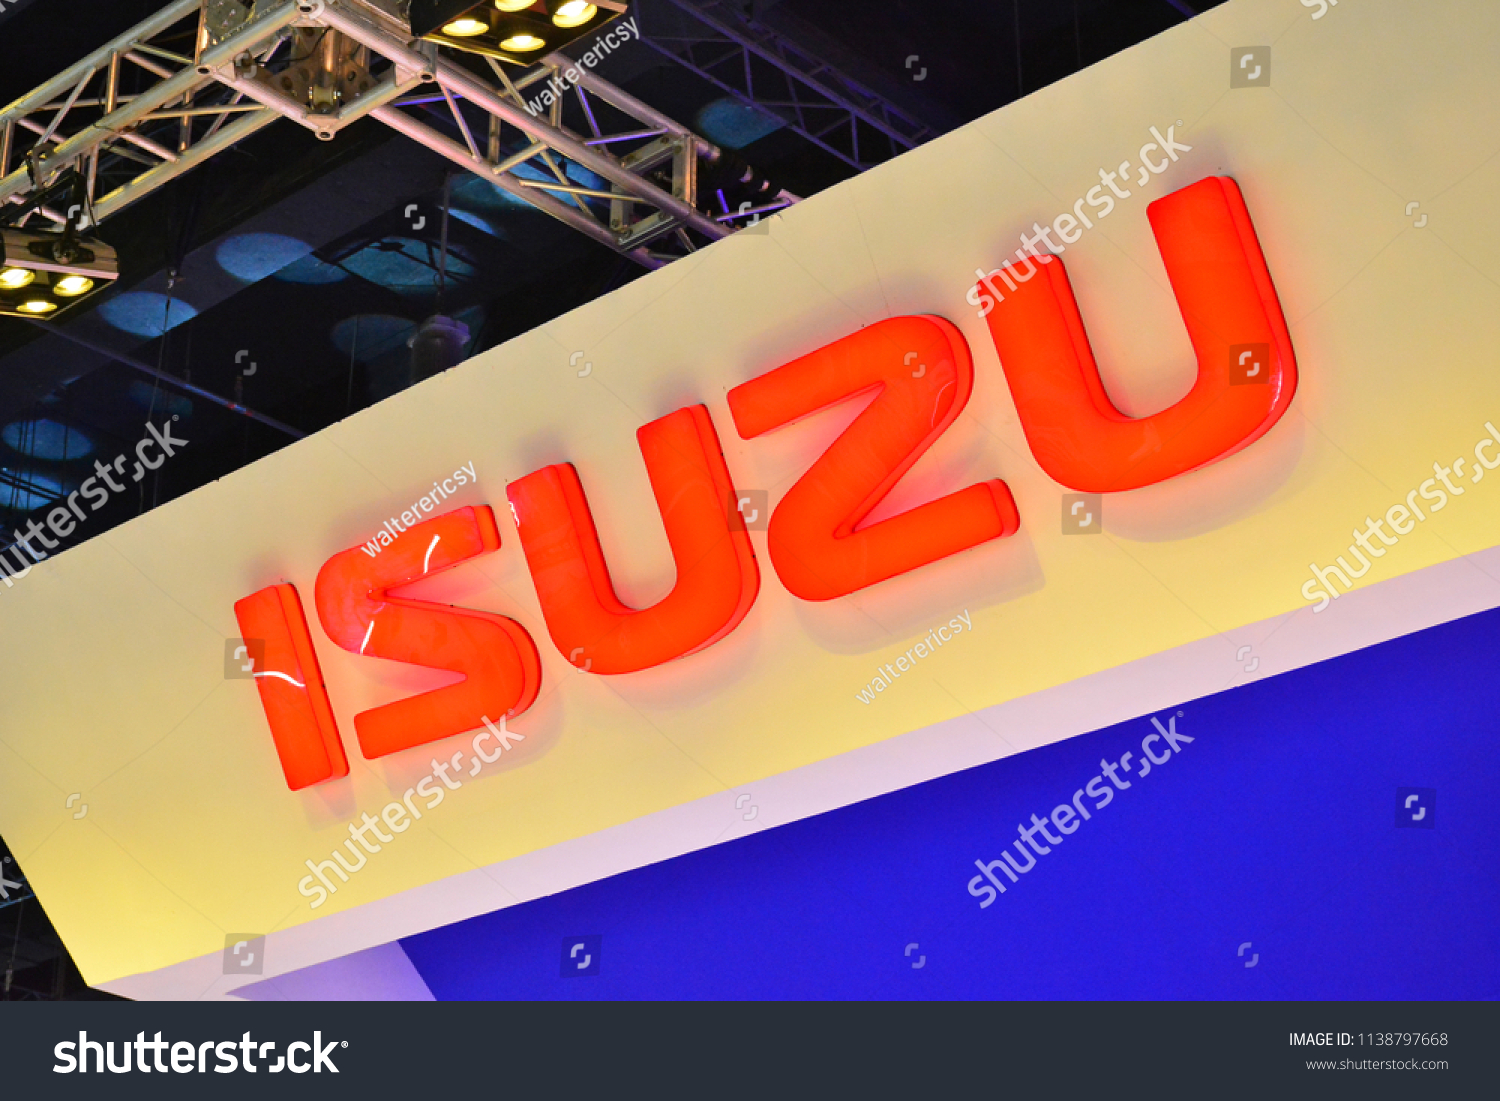 Isuzu Philippines Logo - The Cover Letter For Teacher